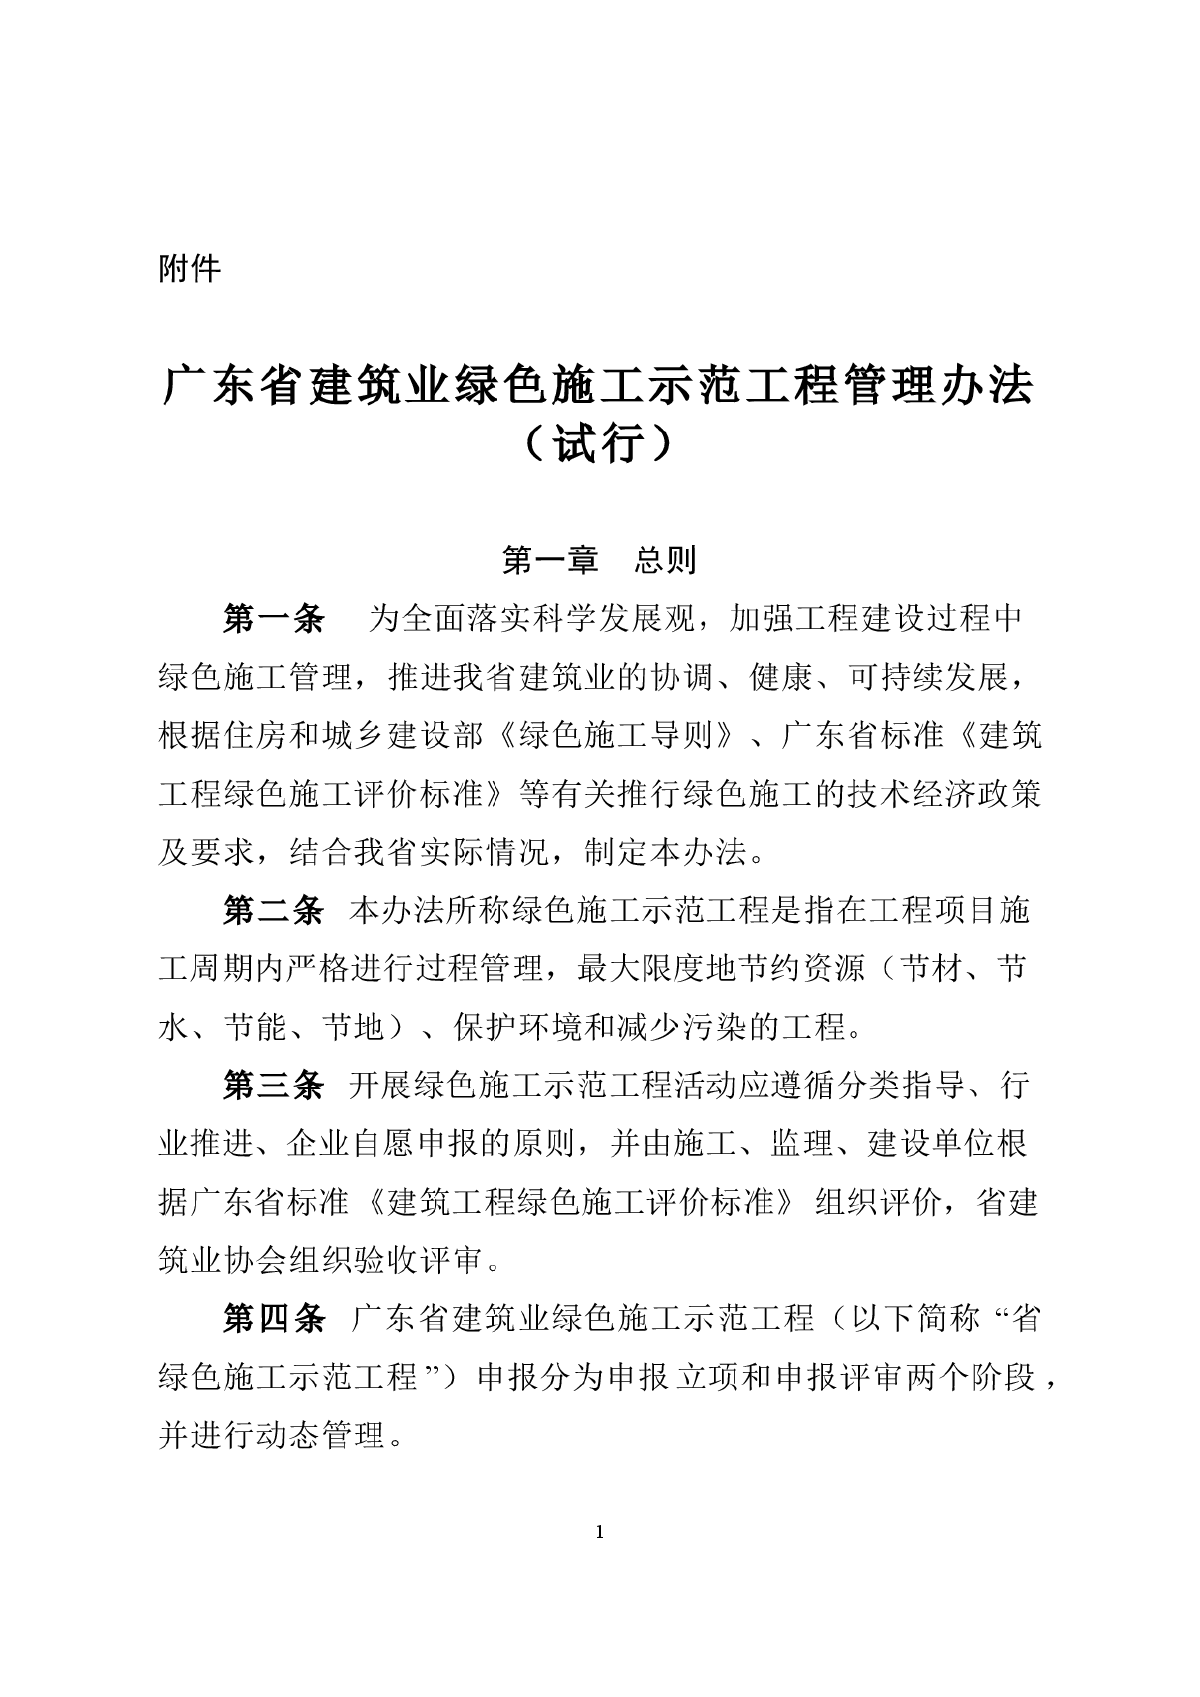 广东省建筑业绿色施工示范工程管理办法